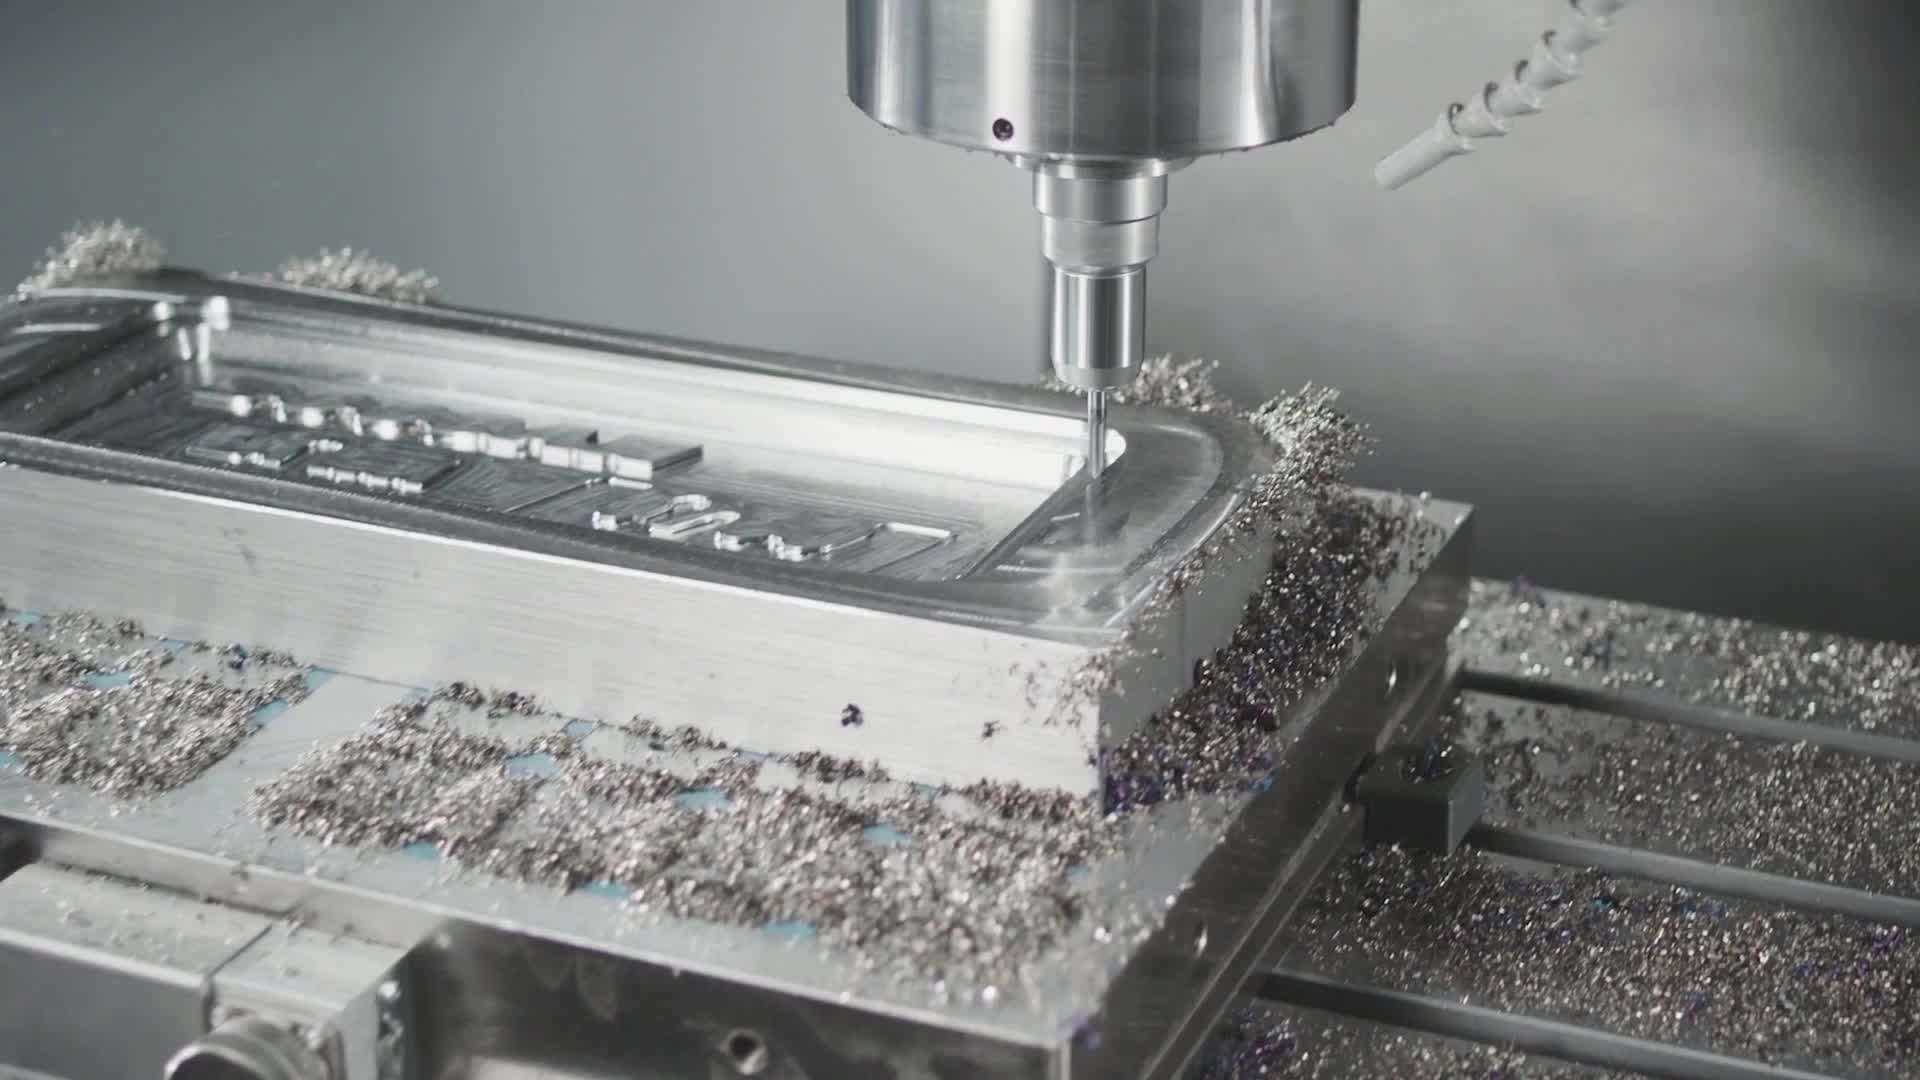 Обработка алюминия: особенности и применение в производстве бытовой электроники